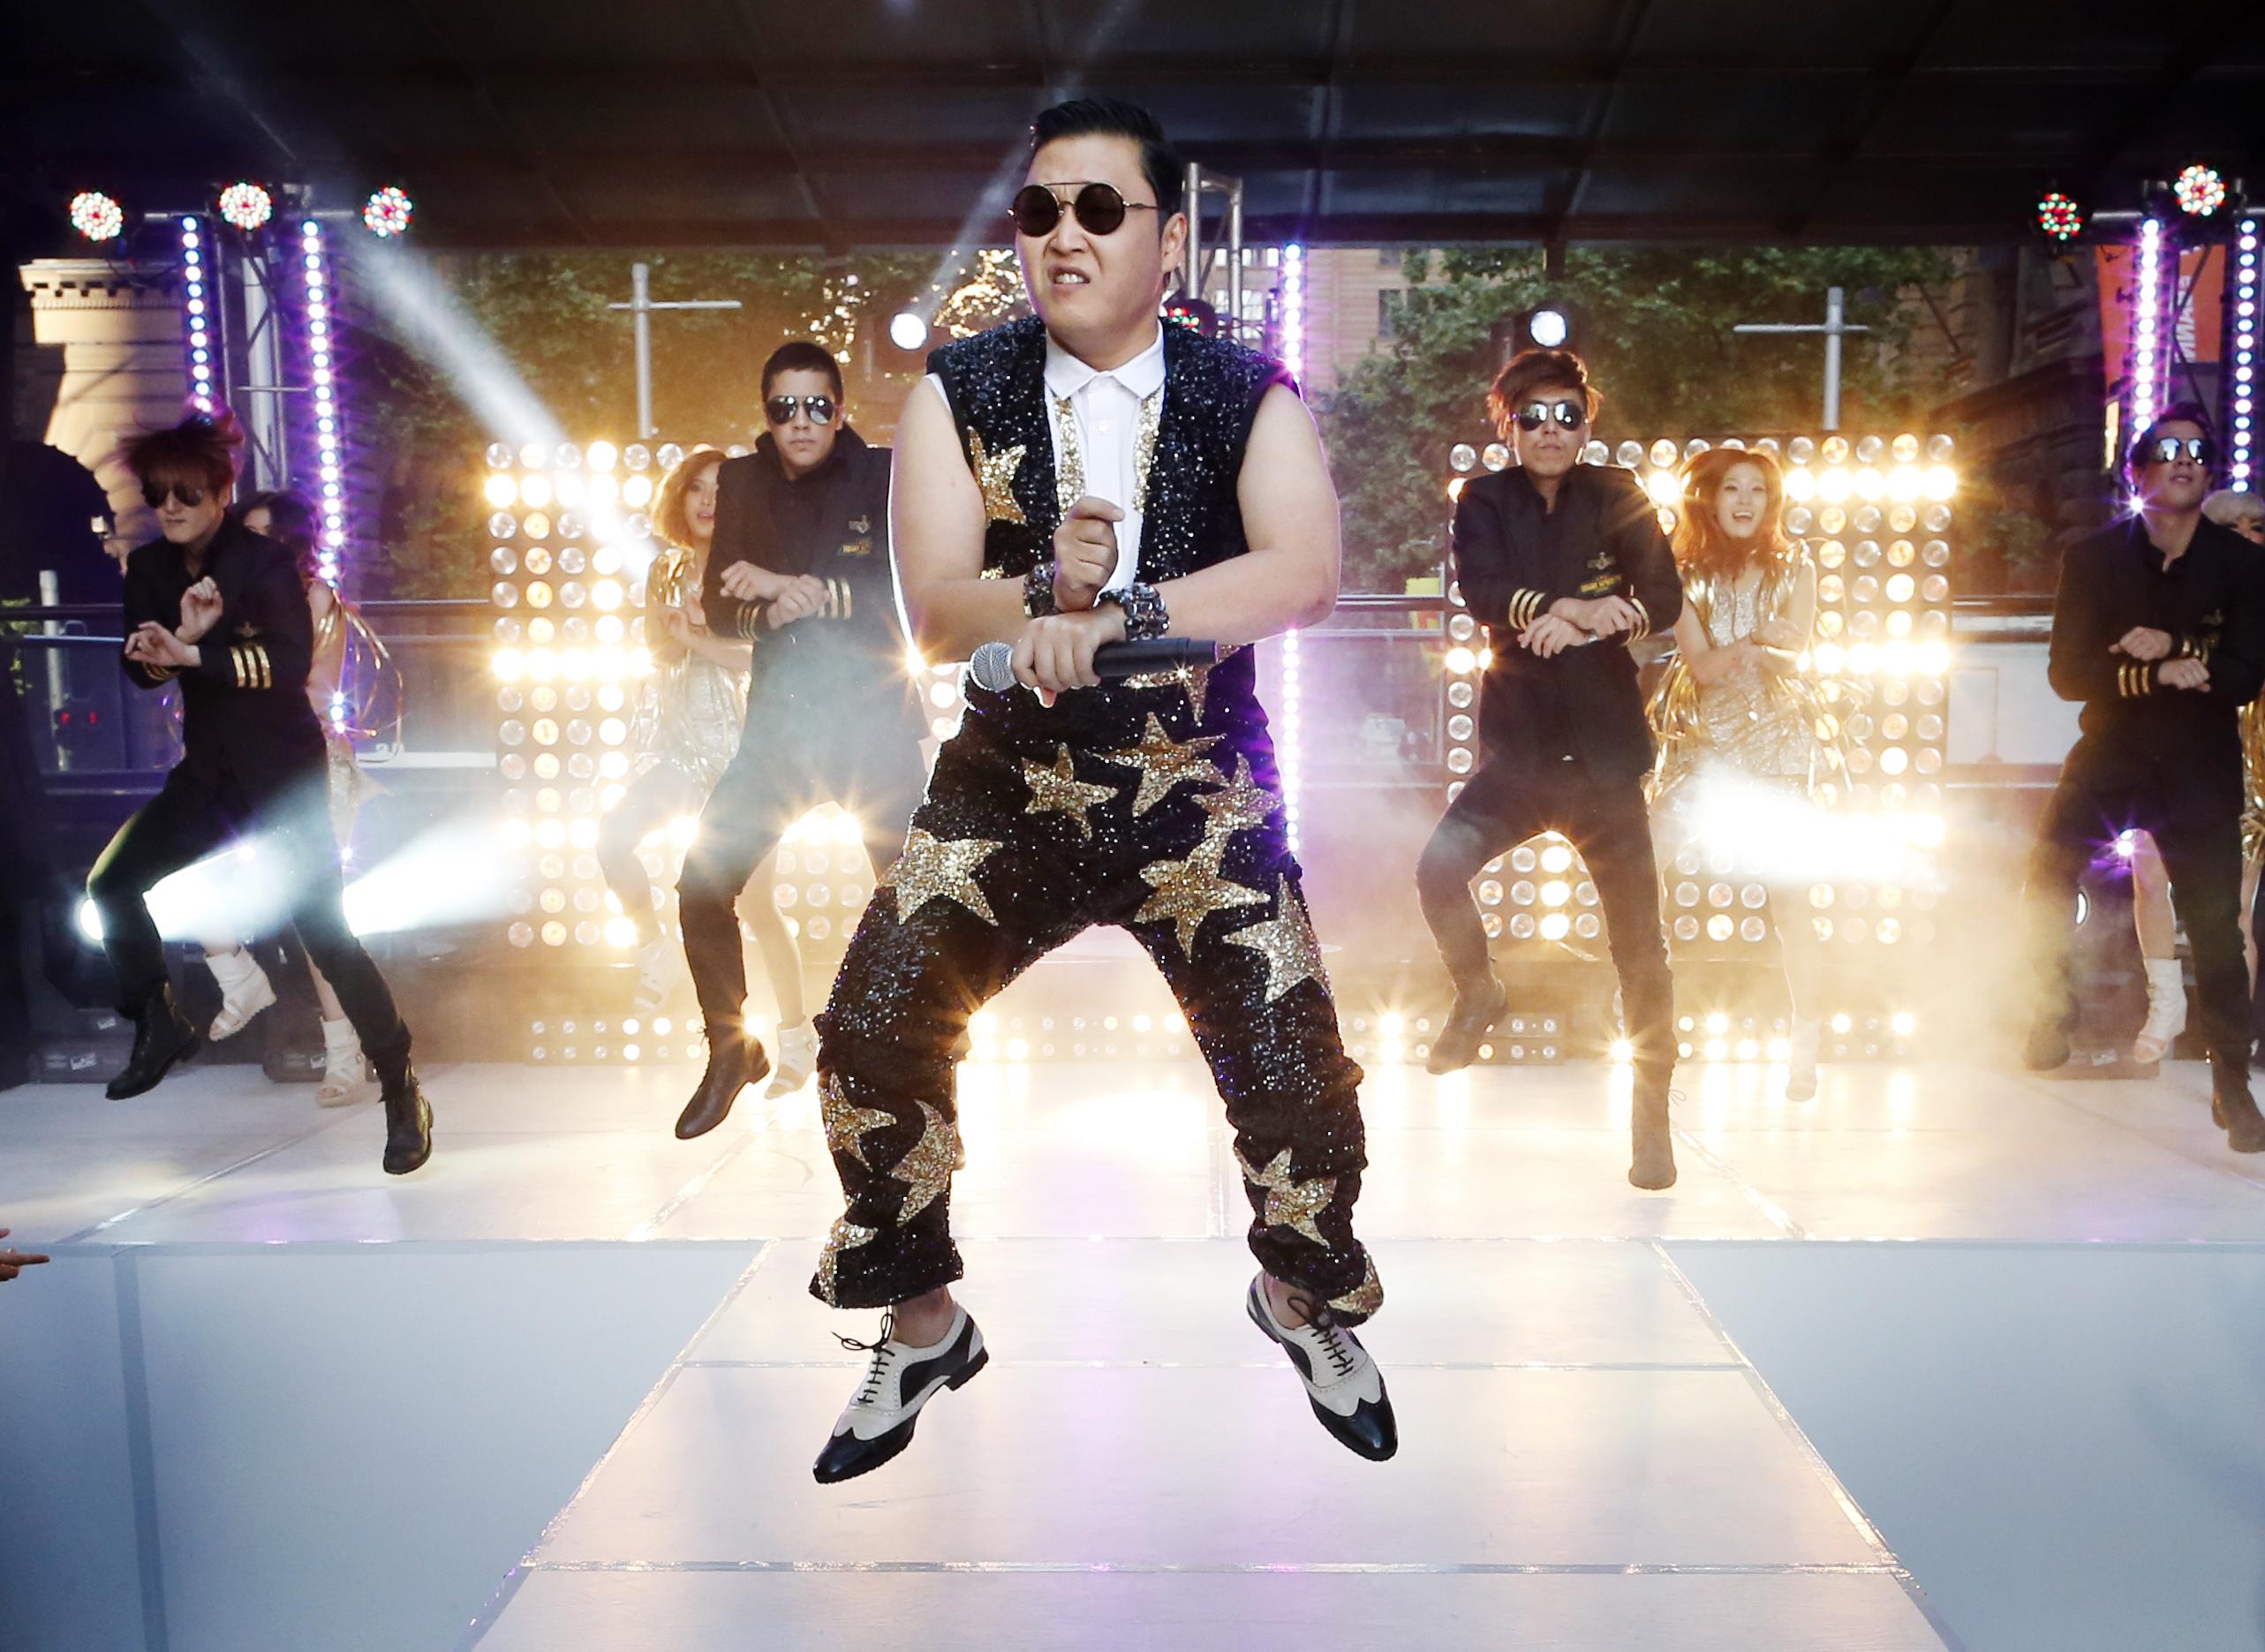 Сингл южнокорейской певицы Psy имел всемирный успех и стал первым видео, которое привлекло миллиард зрителей на YouTube